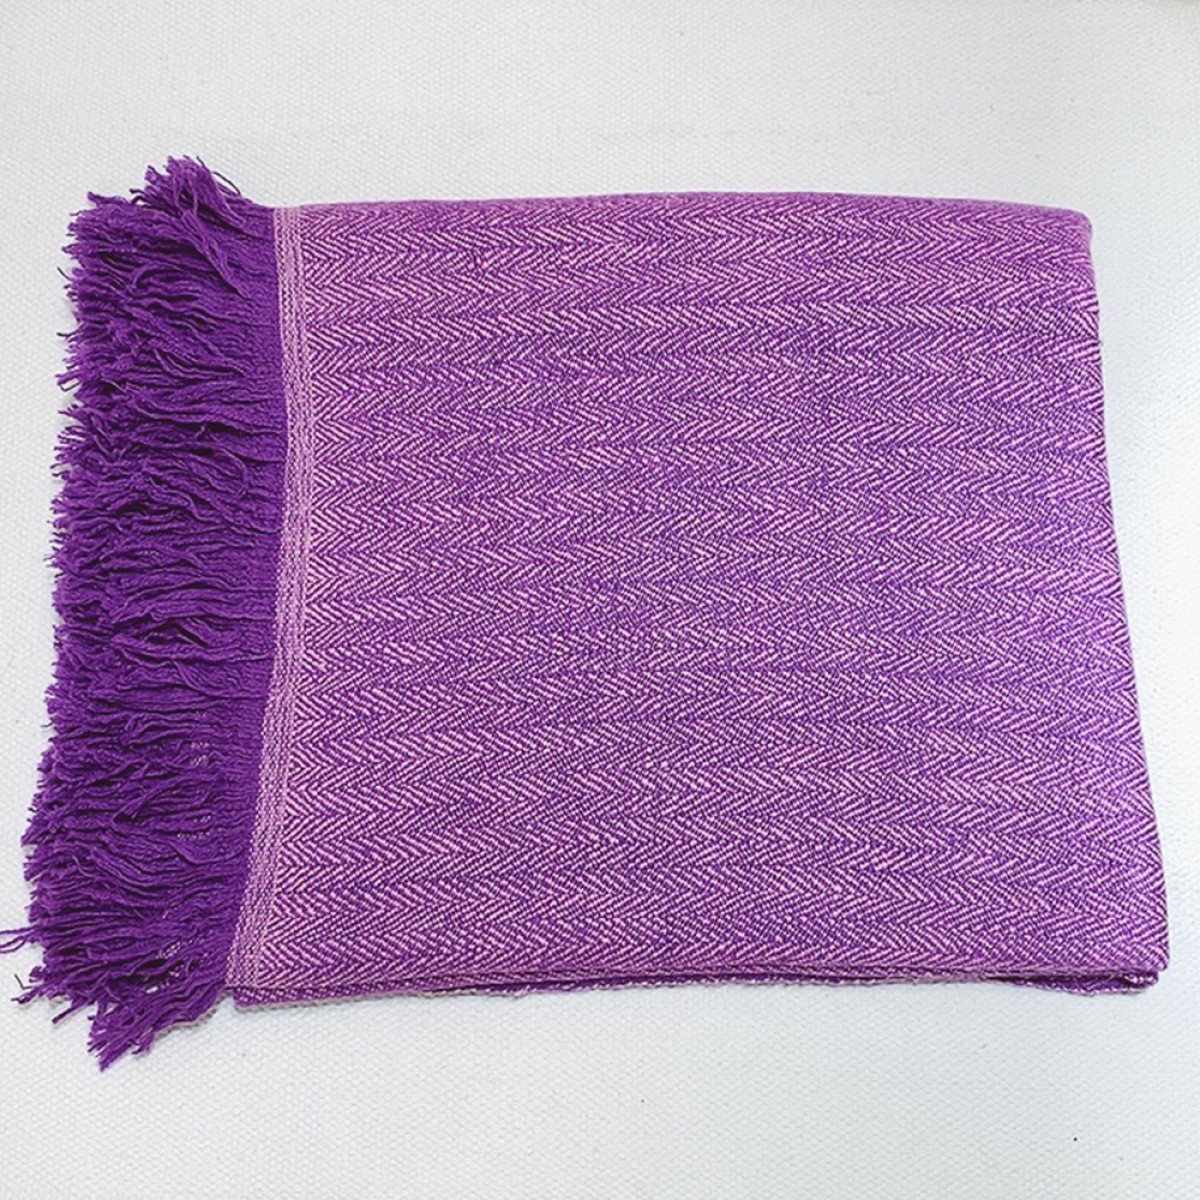 Purple Herringbone Weave Cashmere Blanket  (Made to Order)